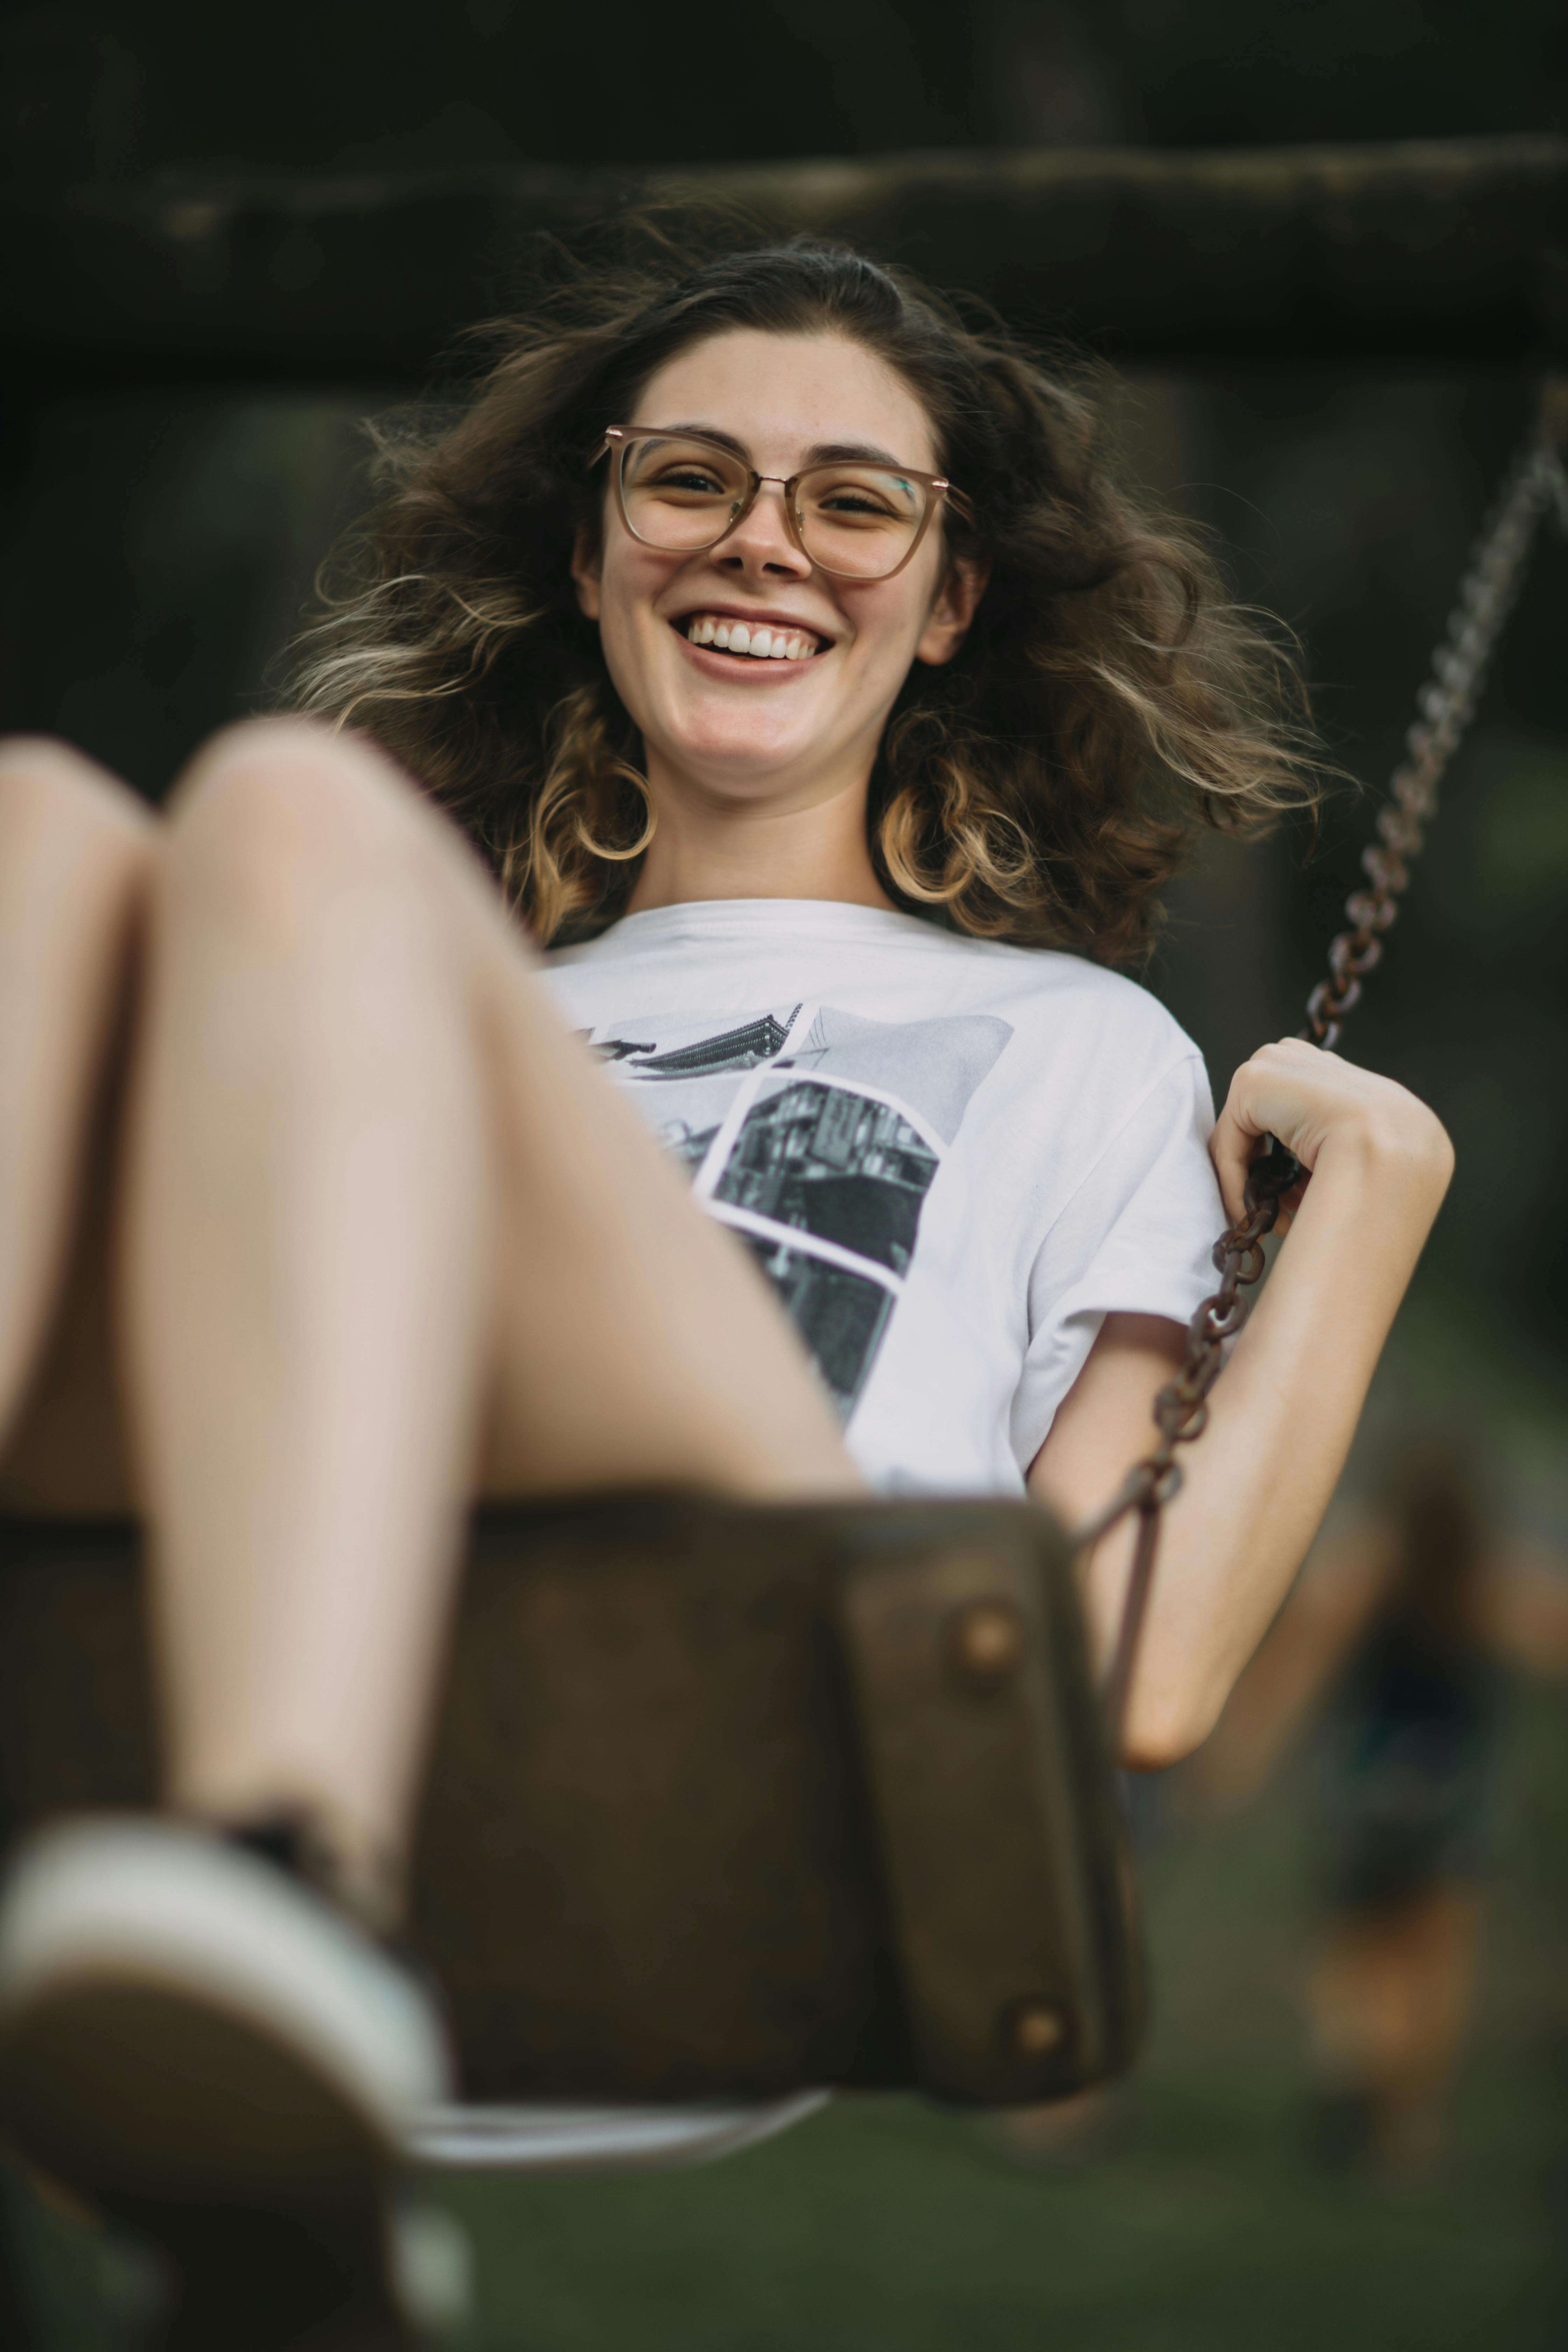 Adolescente sur une balançoire | Source : Pexels